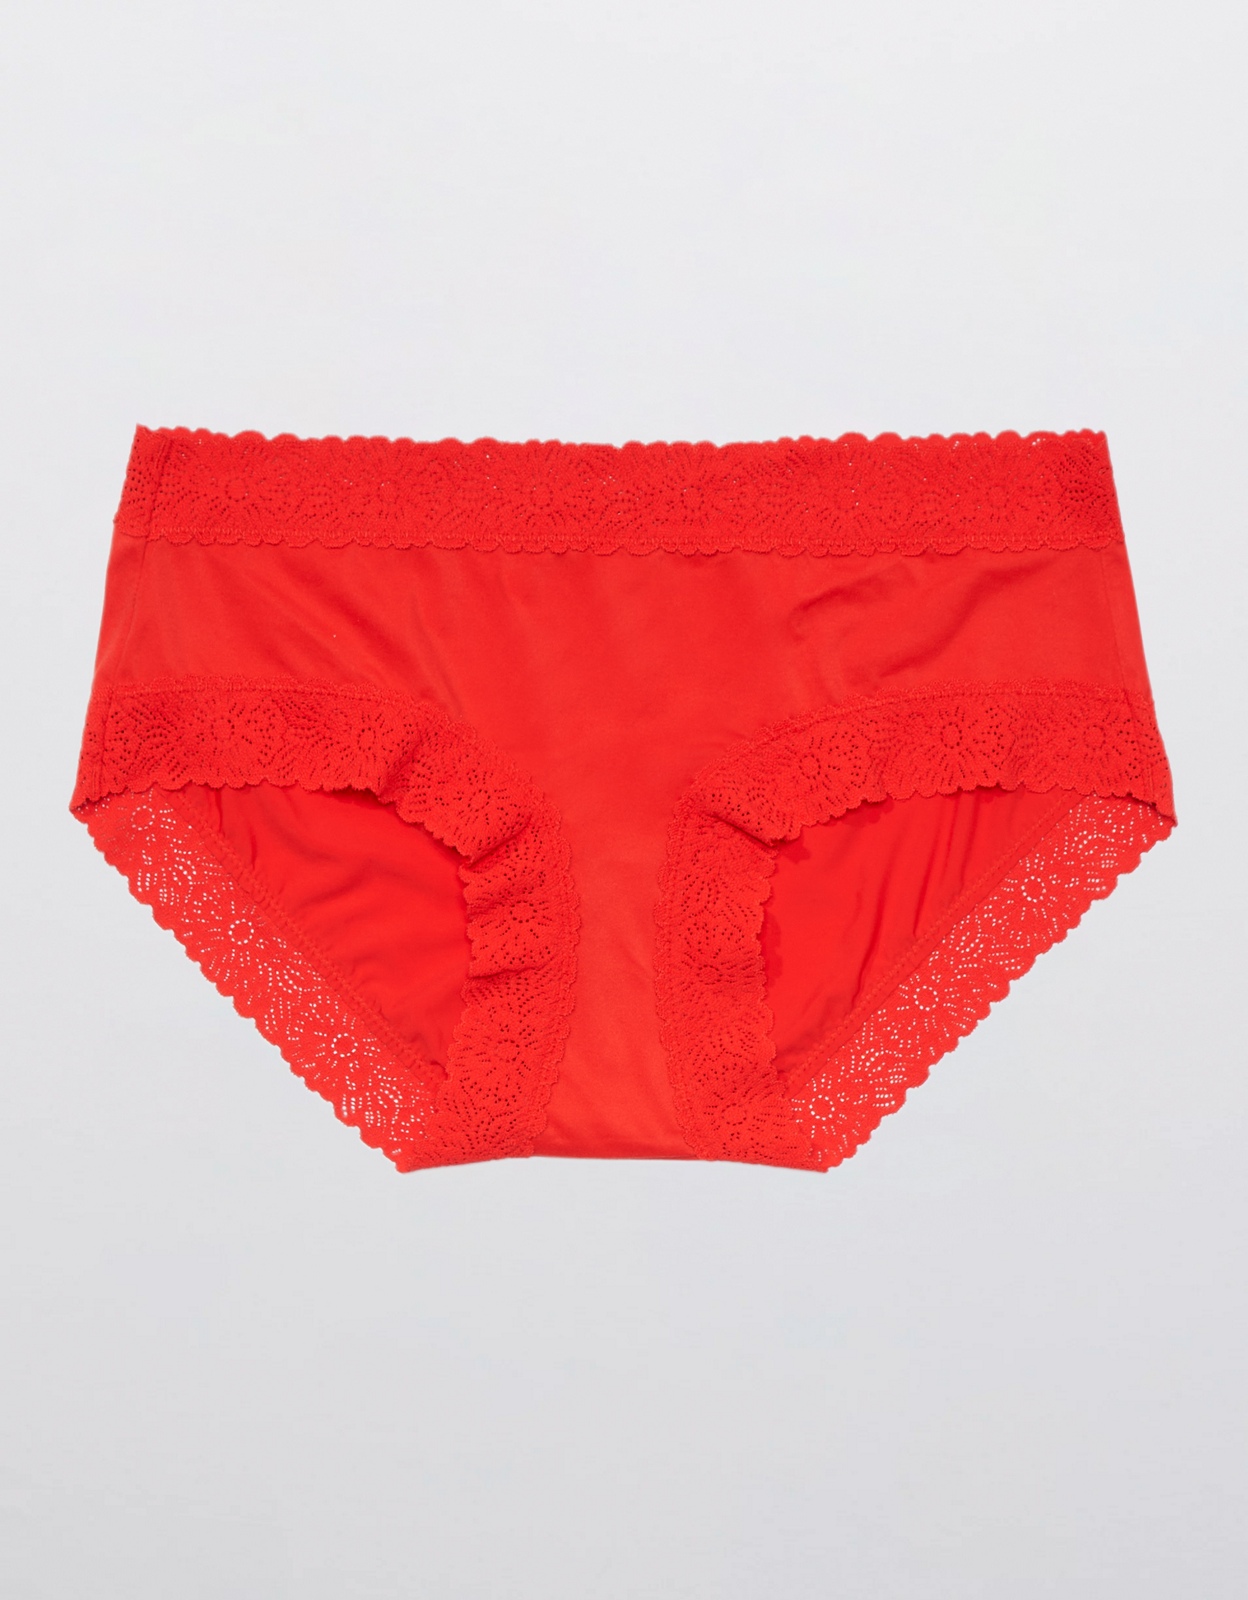 Shop Aerie Sunnie Blossom Lace Boybrief Underwear online